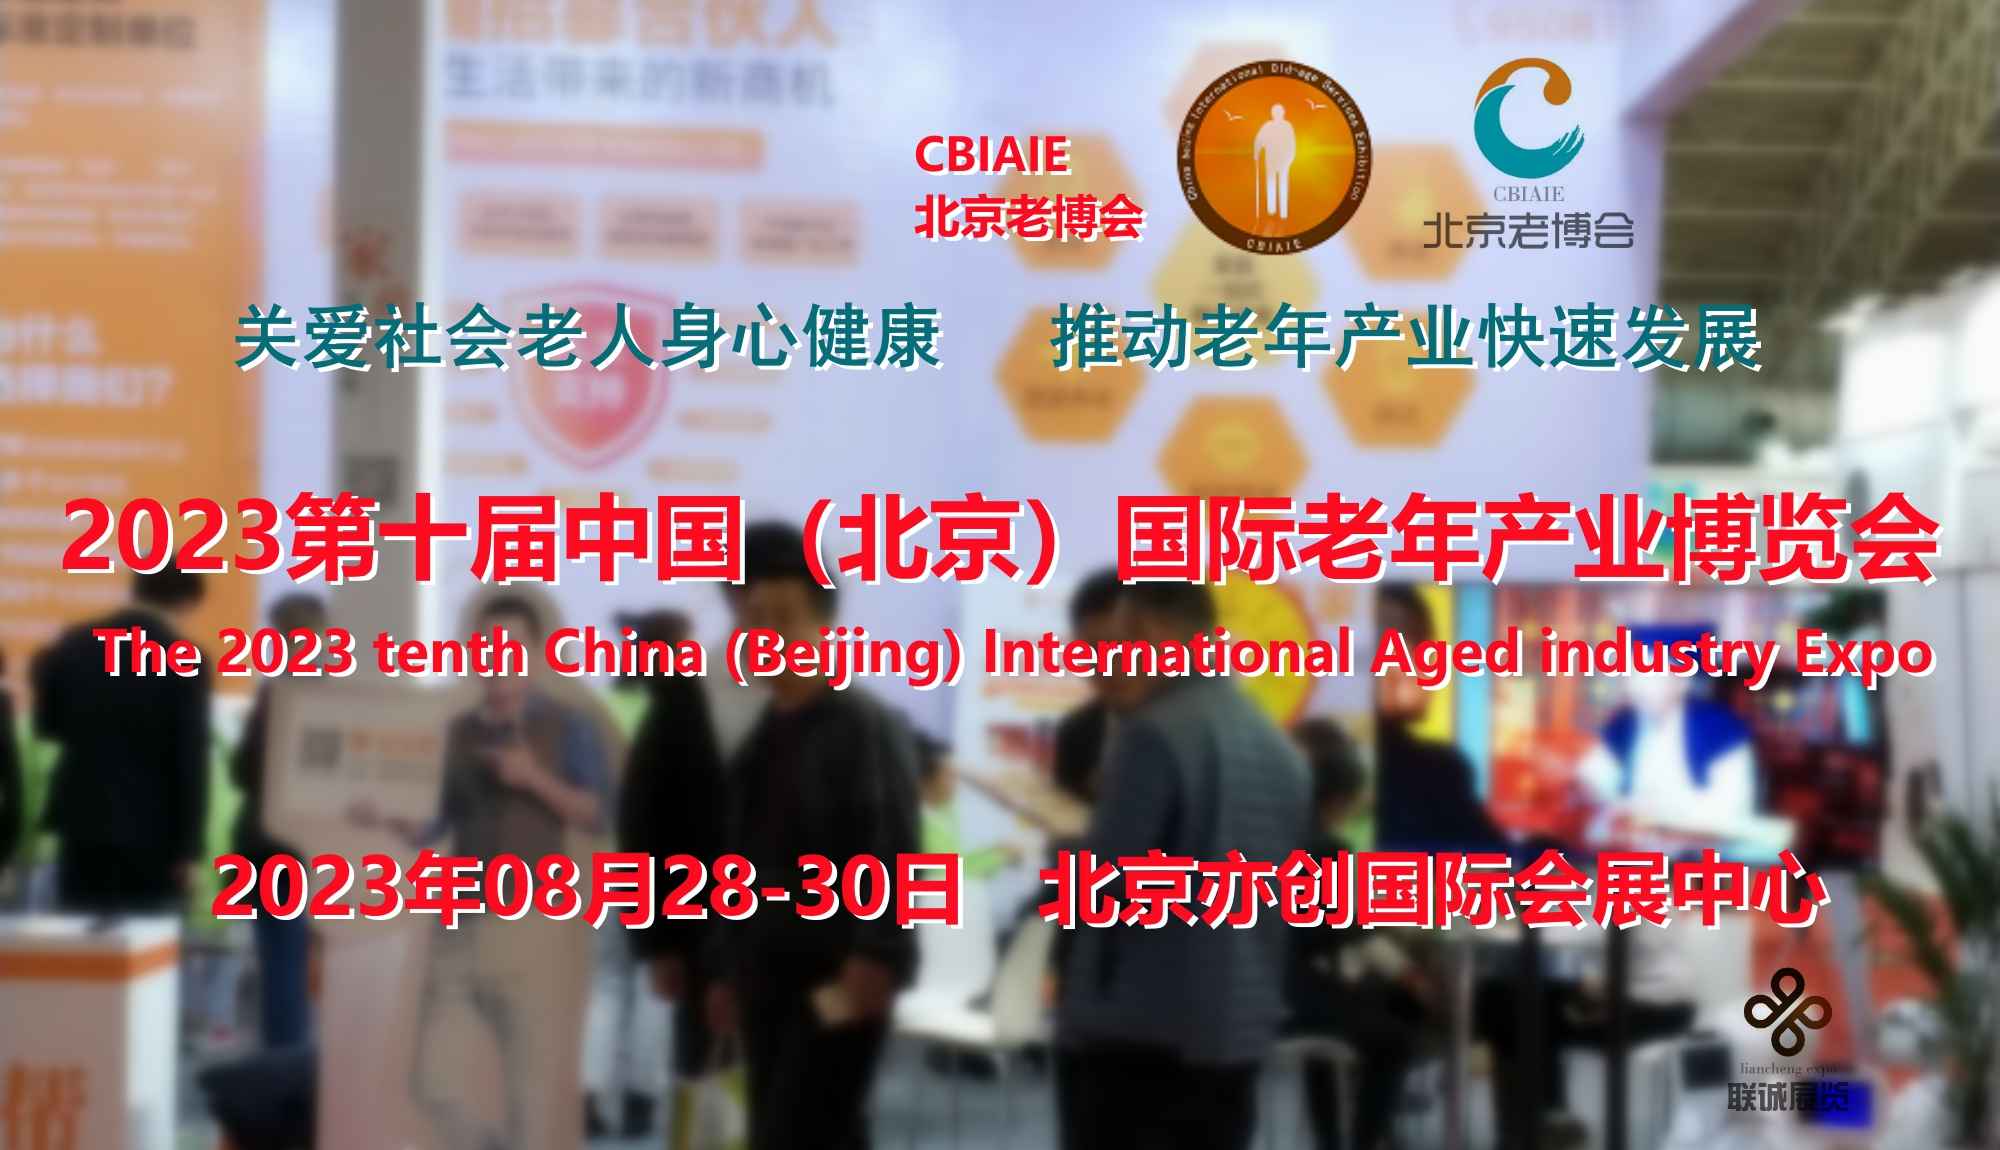 2023第十届中国（北京）国际老年产业博览会（CBIAIE北京老博会）